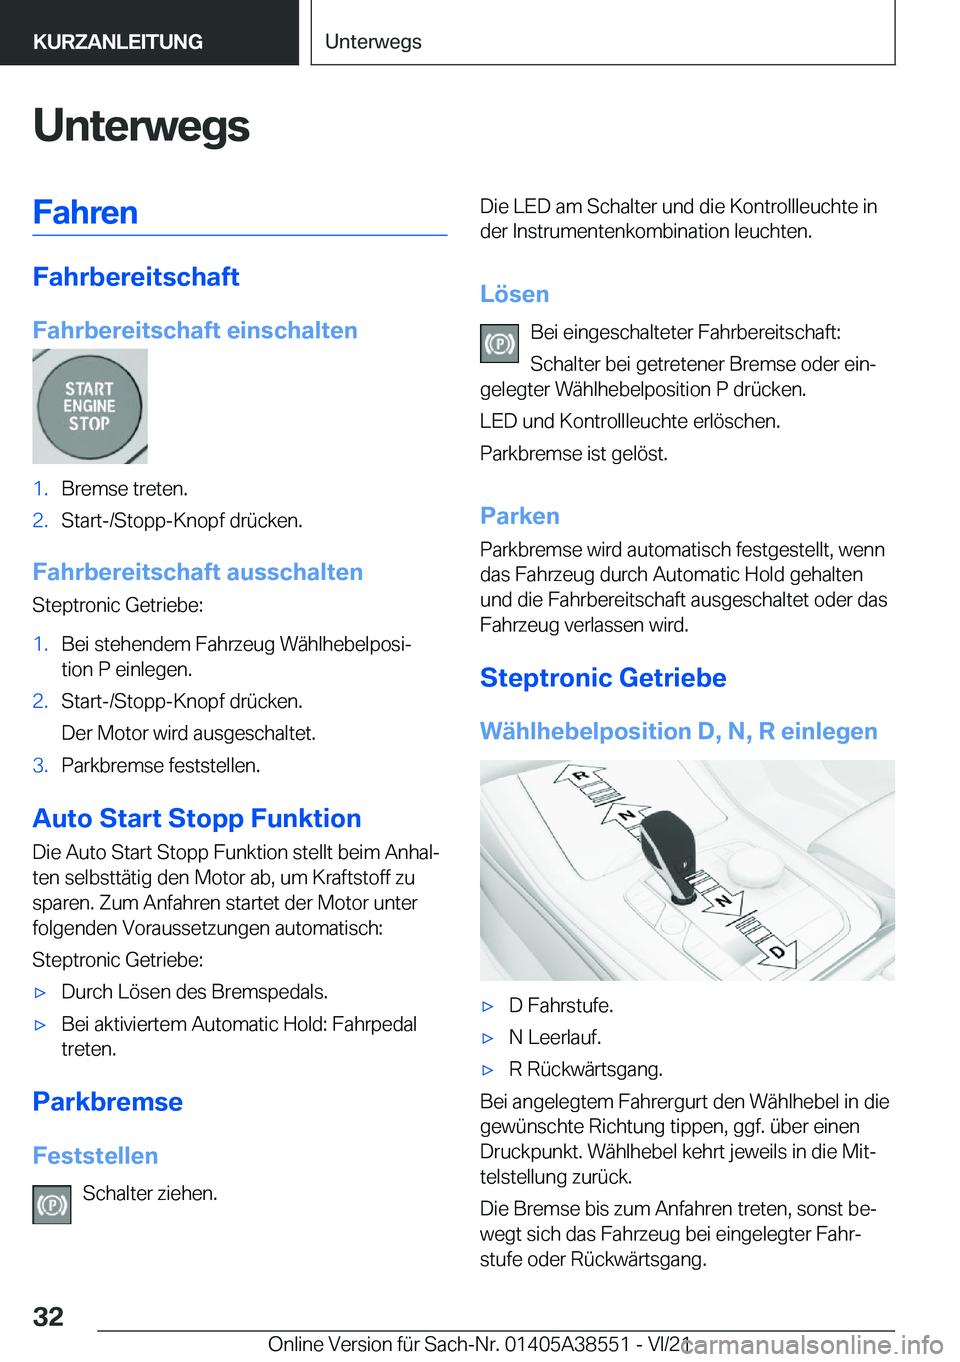 BMW X6 2022  Betriebsanleitungen (in German) �U�n�t�e�r�w�e�g�s�F�a�h�r�e�n
�F�a�h�r�b�e�r�e�i�t�s�c�h�a�f�t
�F�a�h�r�b�e�r�e�i�t�s�c�h�a�f�t��e�i�n�s�c�h�a�l�t�e�n
�1�.�B�r�e�m�s�e��t�r�e�t�e�n�.�2�.�S�t�a�r�t�-�/�S�t�o�p�p�-�K�n�o�p�f��d�r�